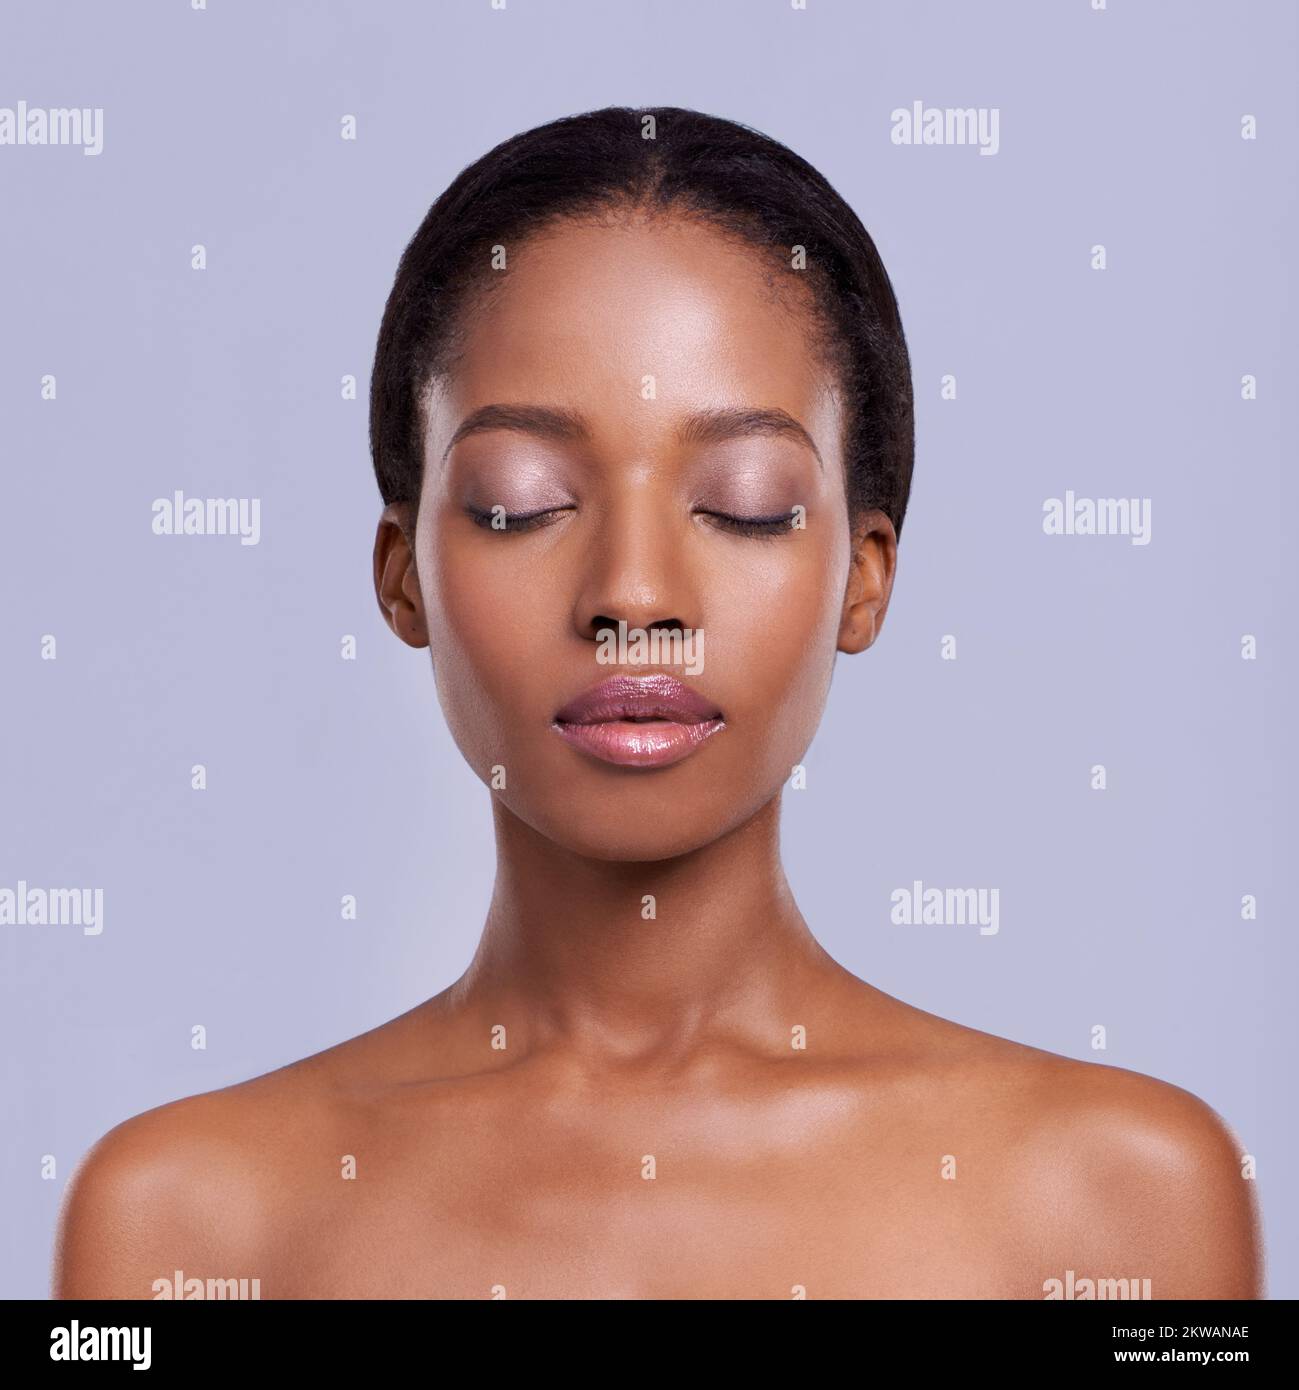 La peau parfaite peut être à vous. Tête et épaules en studio photo d'un magnifique modèle afro-américain. Banque D'Images